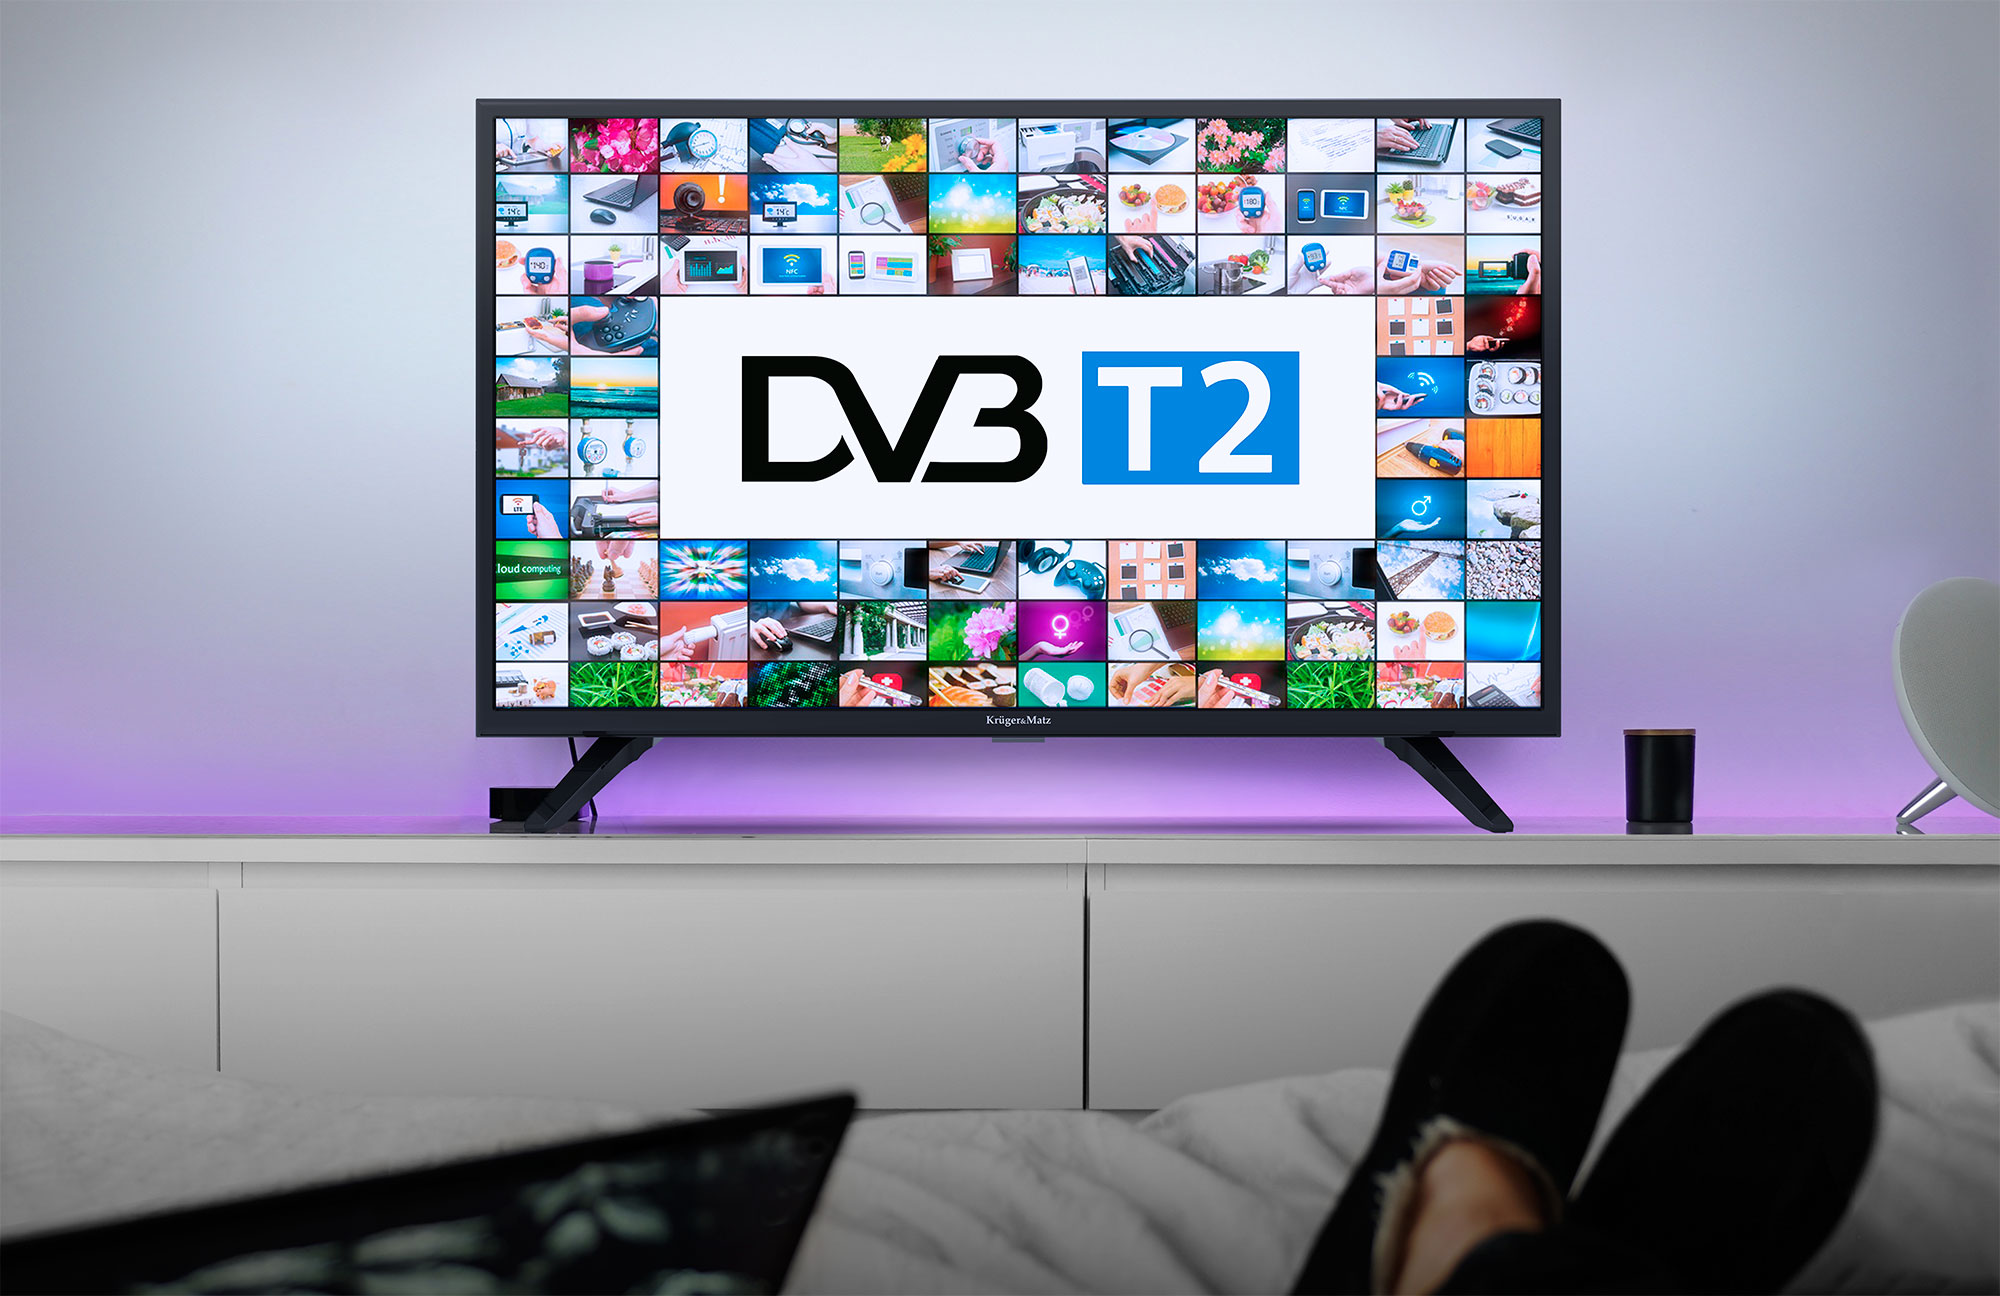 Wiedząc jak ważna jest uniwersalność i komfort użytkowania, 32-calowy telewizor Kruger&Matz został wyposażony w tuner DVB-T2, który pozwoli na odbiór kanałów cyfrowej telewizji naziemnej. Teraz nie musisz już martwić się o zakup dodatkowych urządzeń!